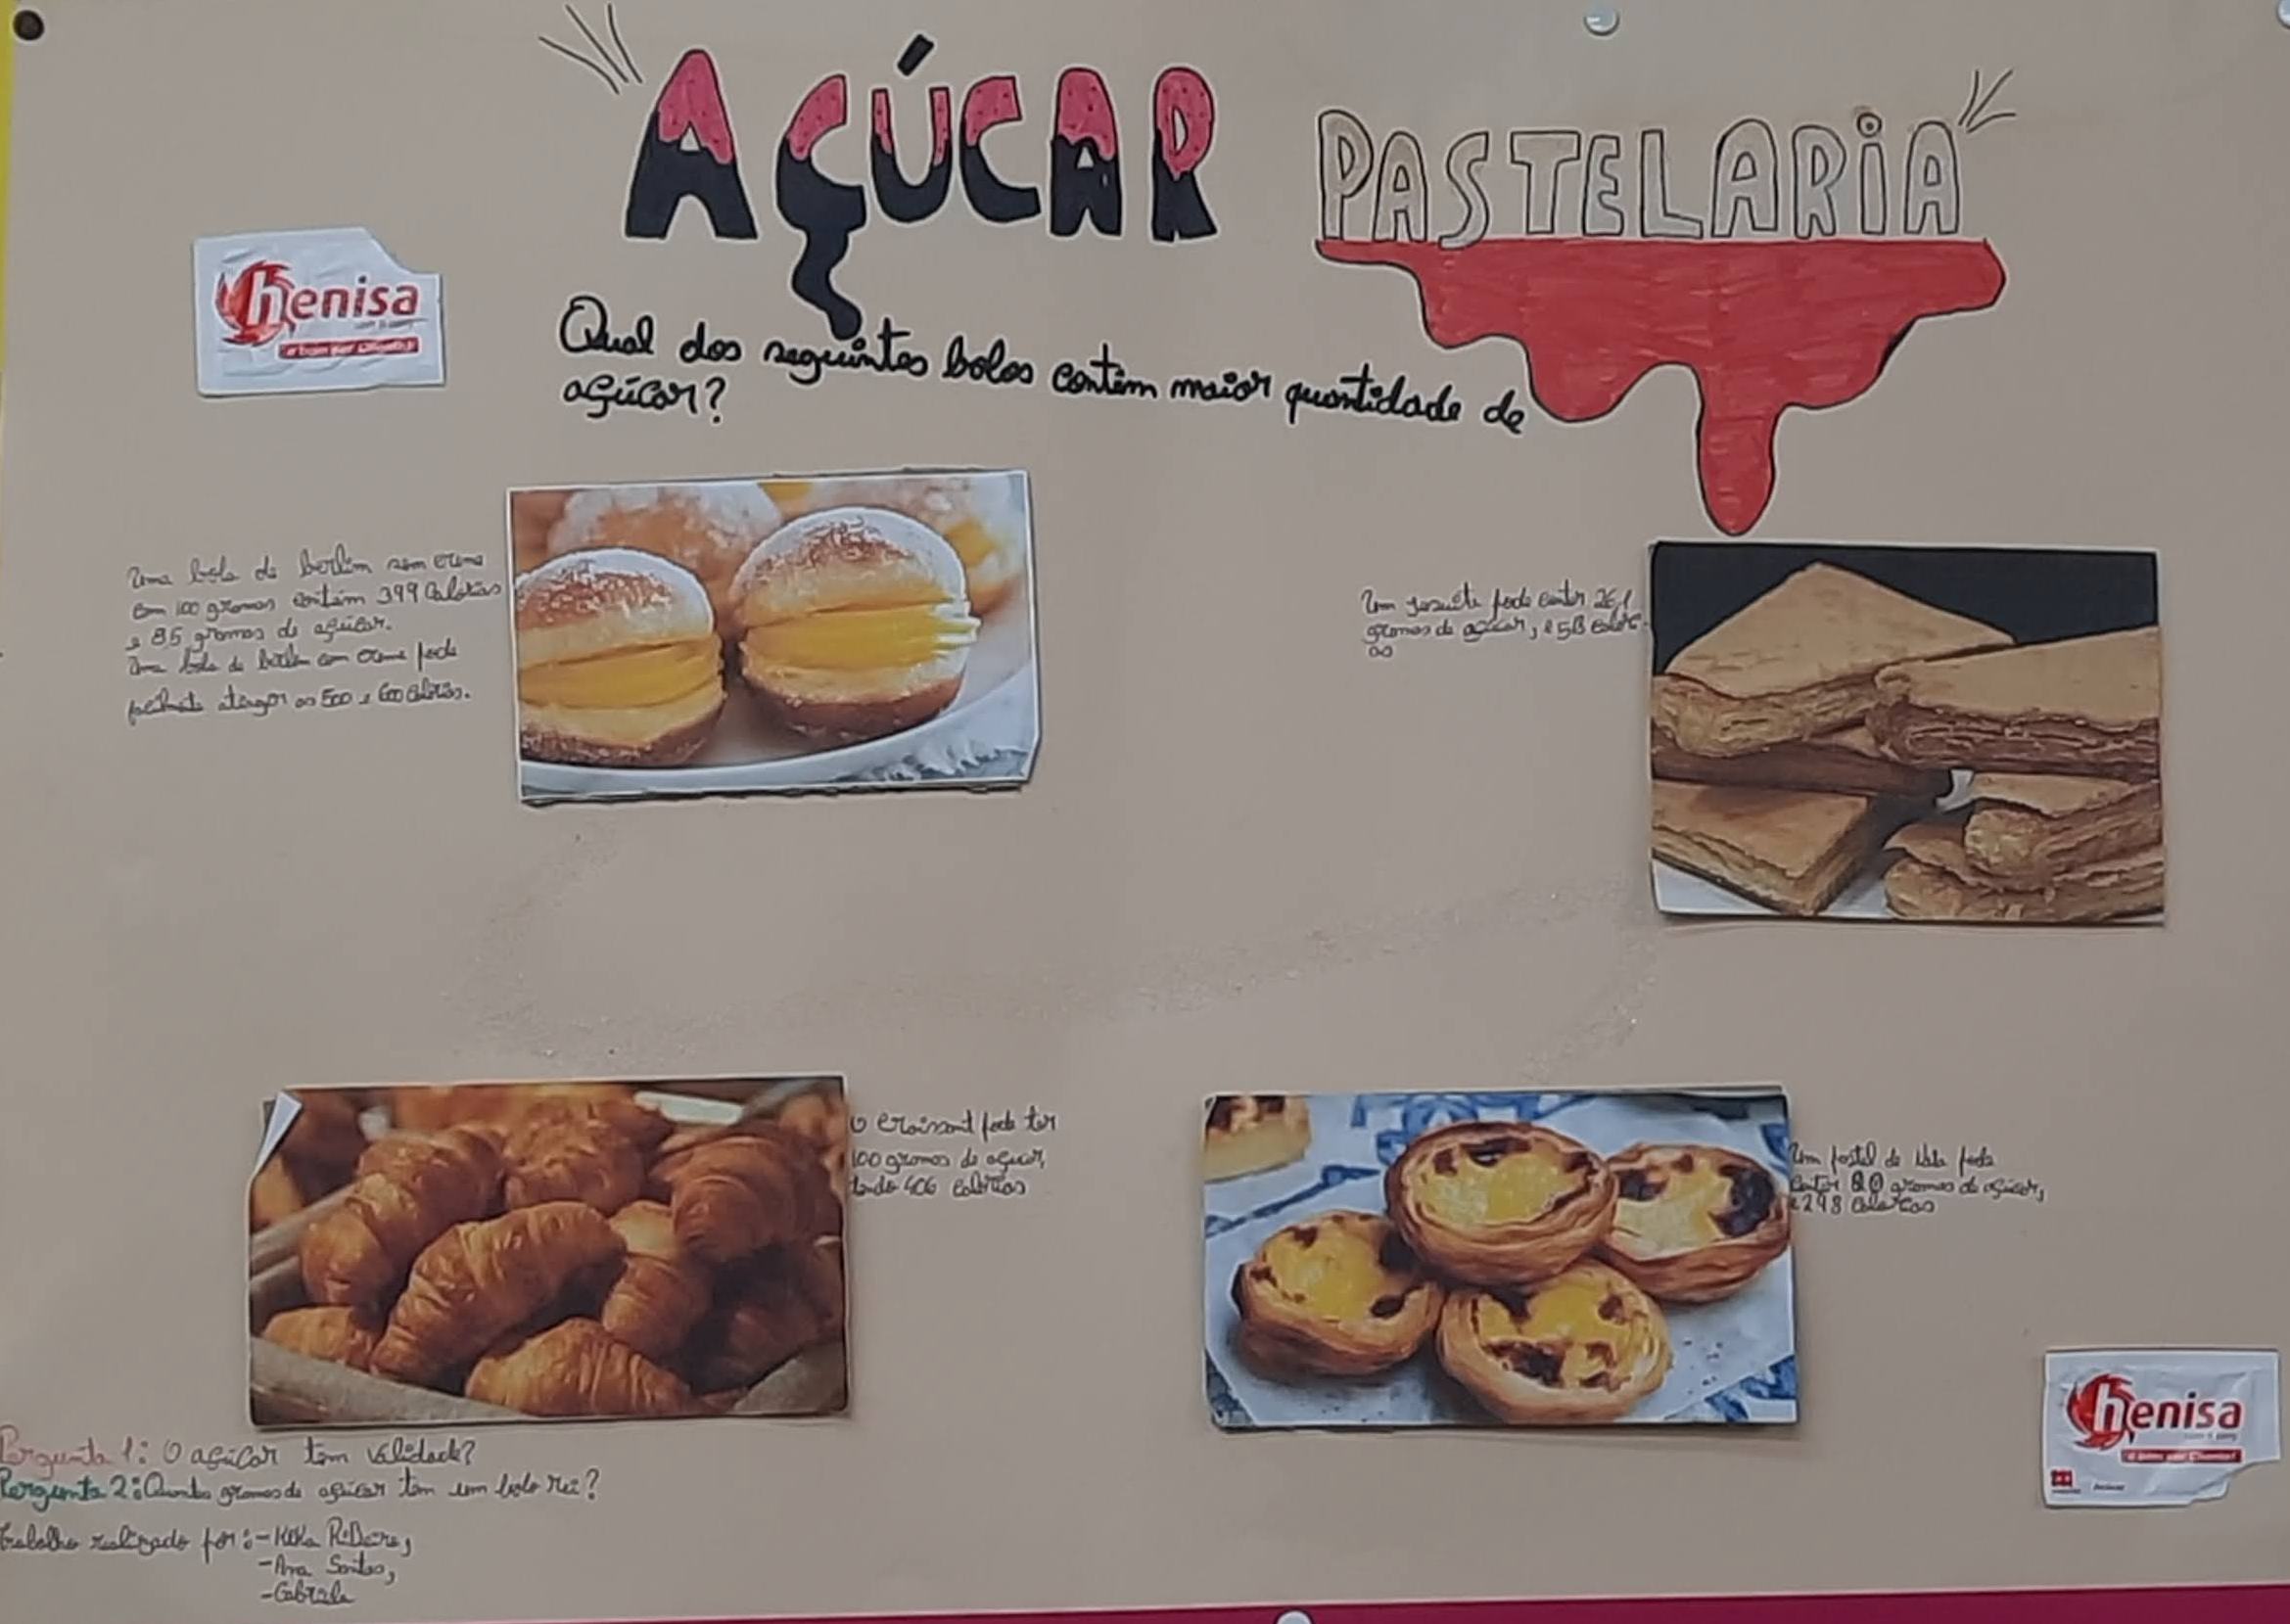 Cartaz 4 - Açúcar/ Pastelaria